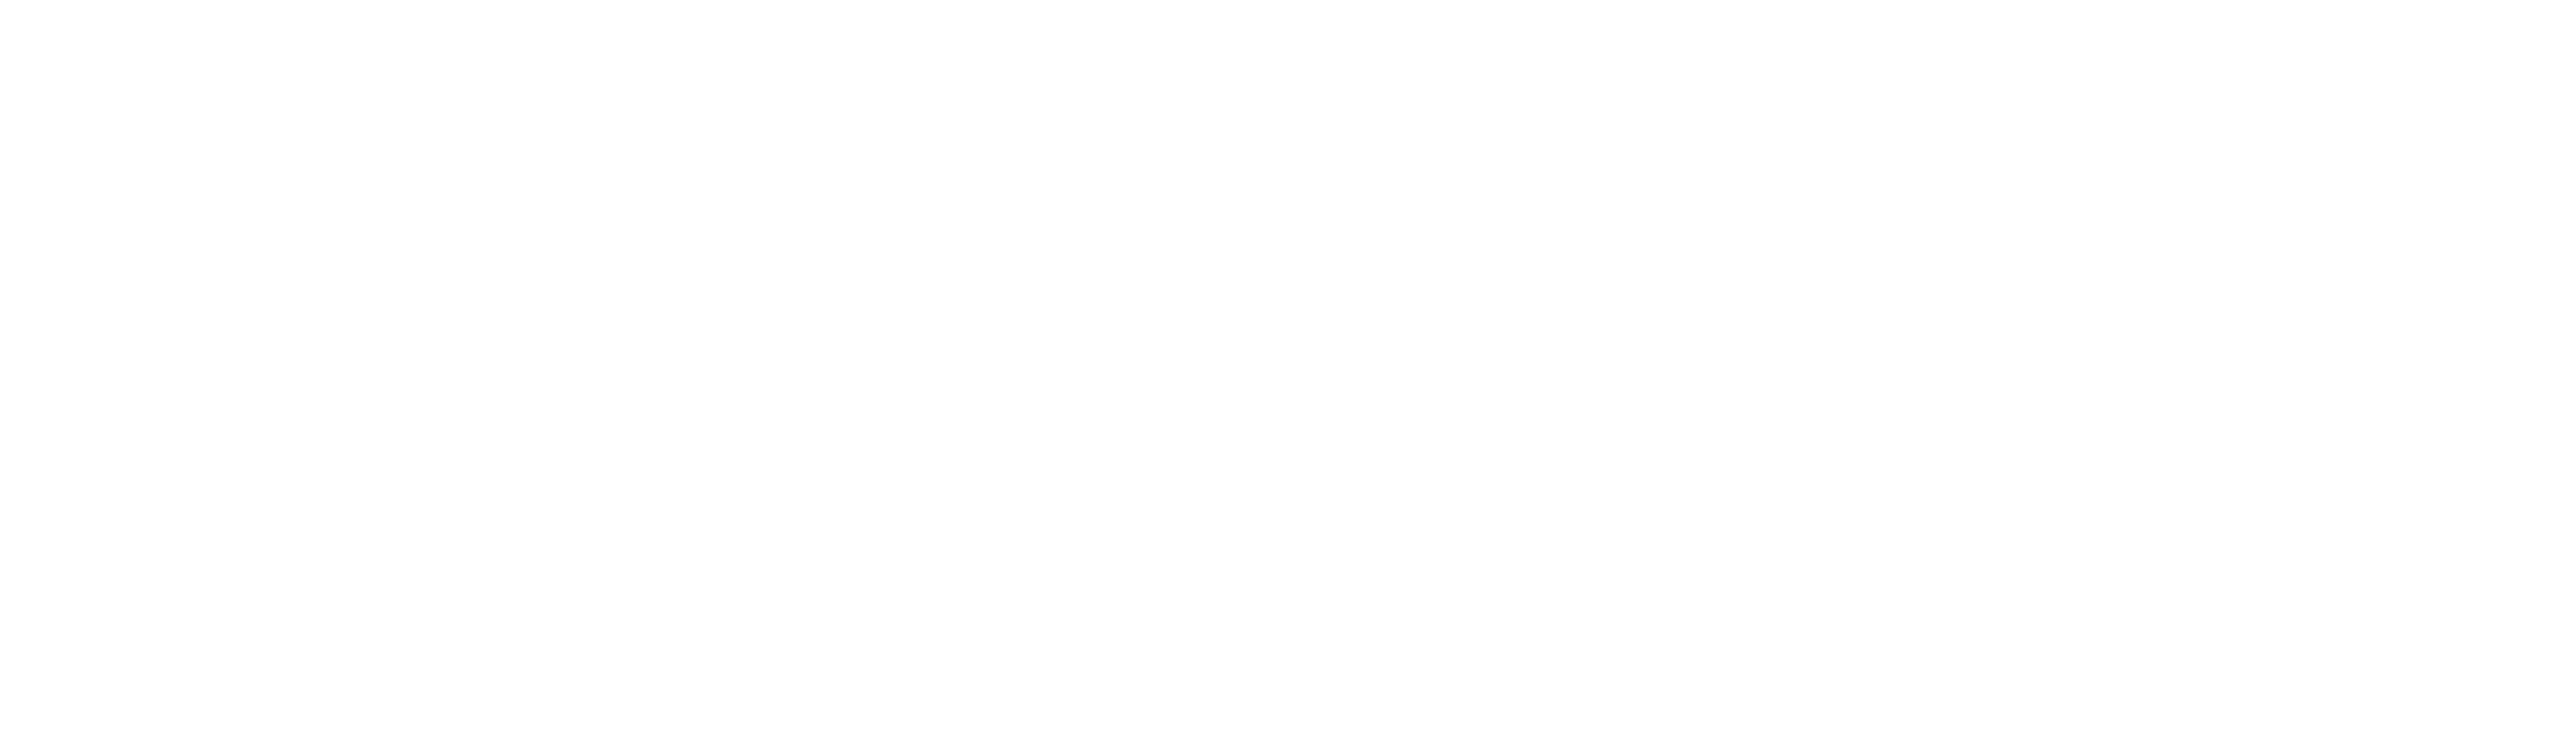 Frasers Group white logo